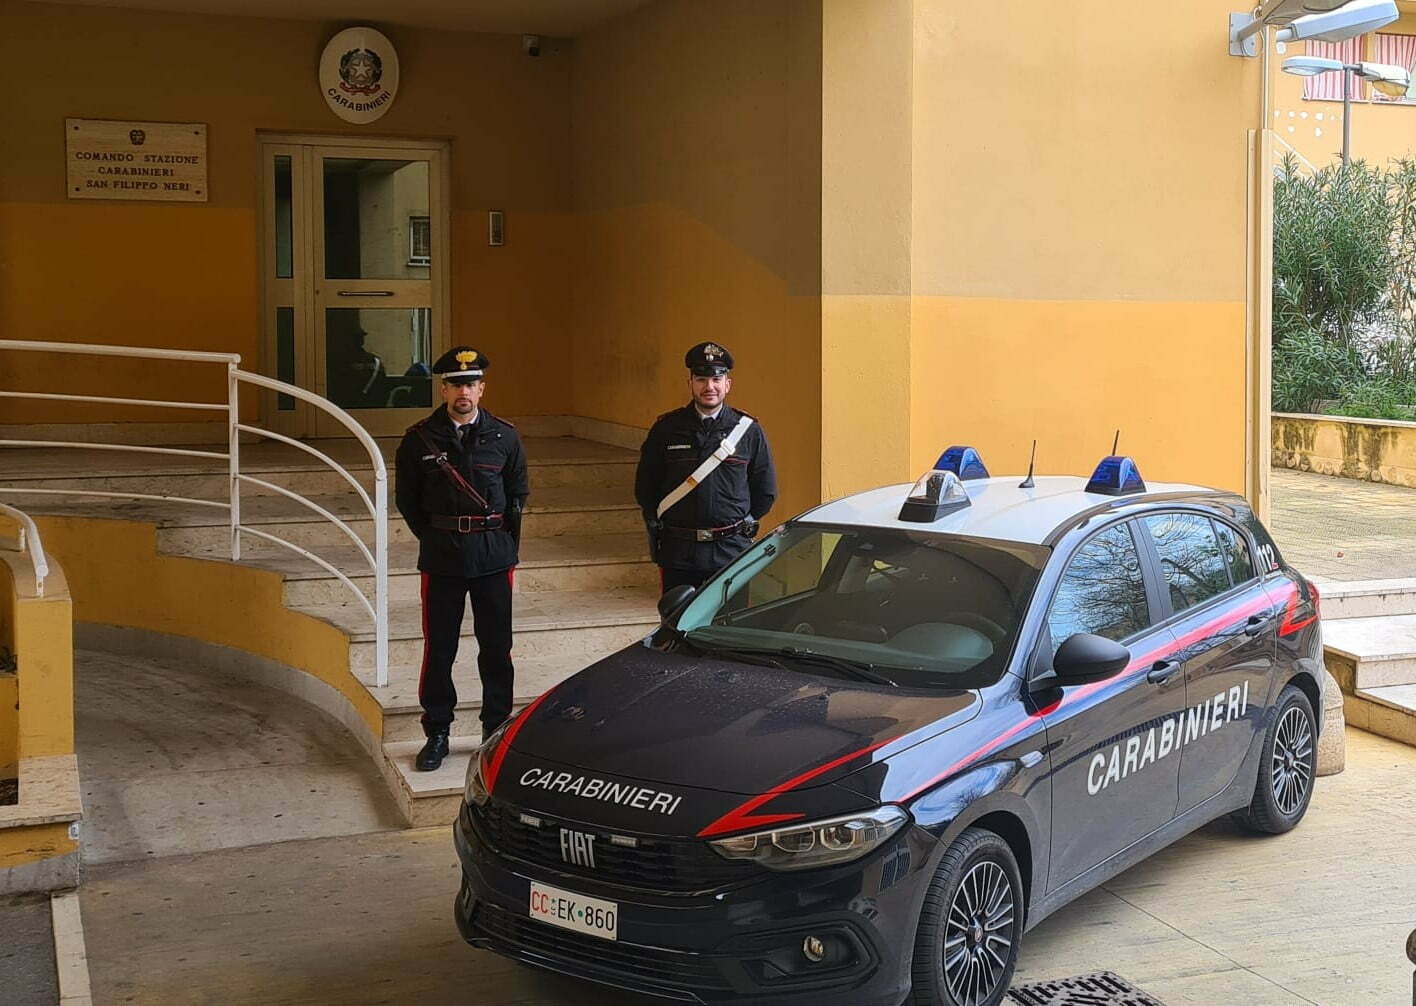 Intera famiglia con la "passione" per lo spaccio arrestata a Palermo